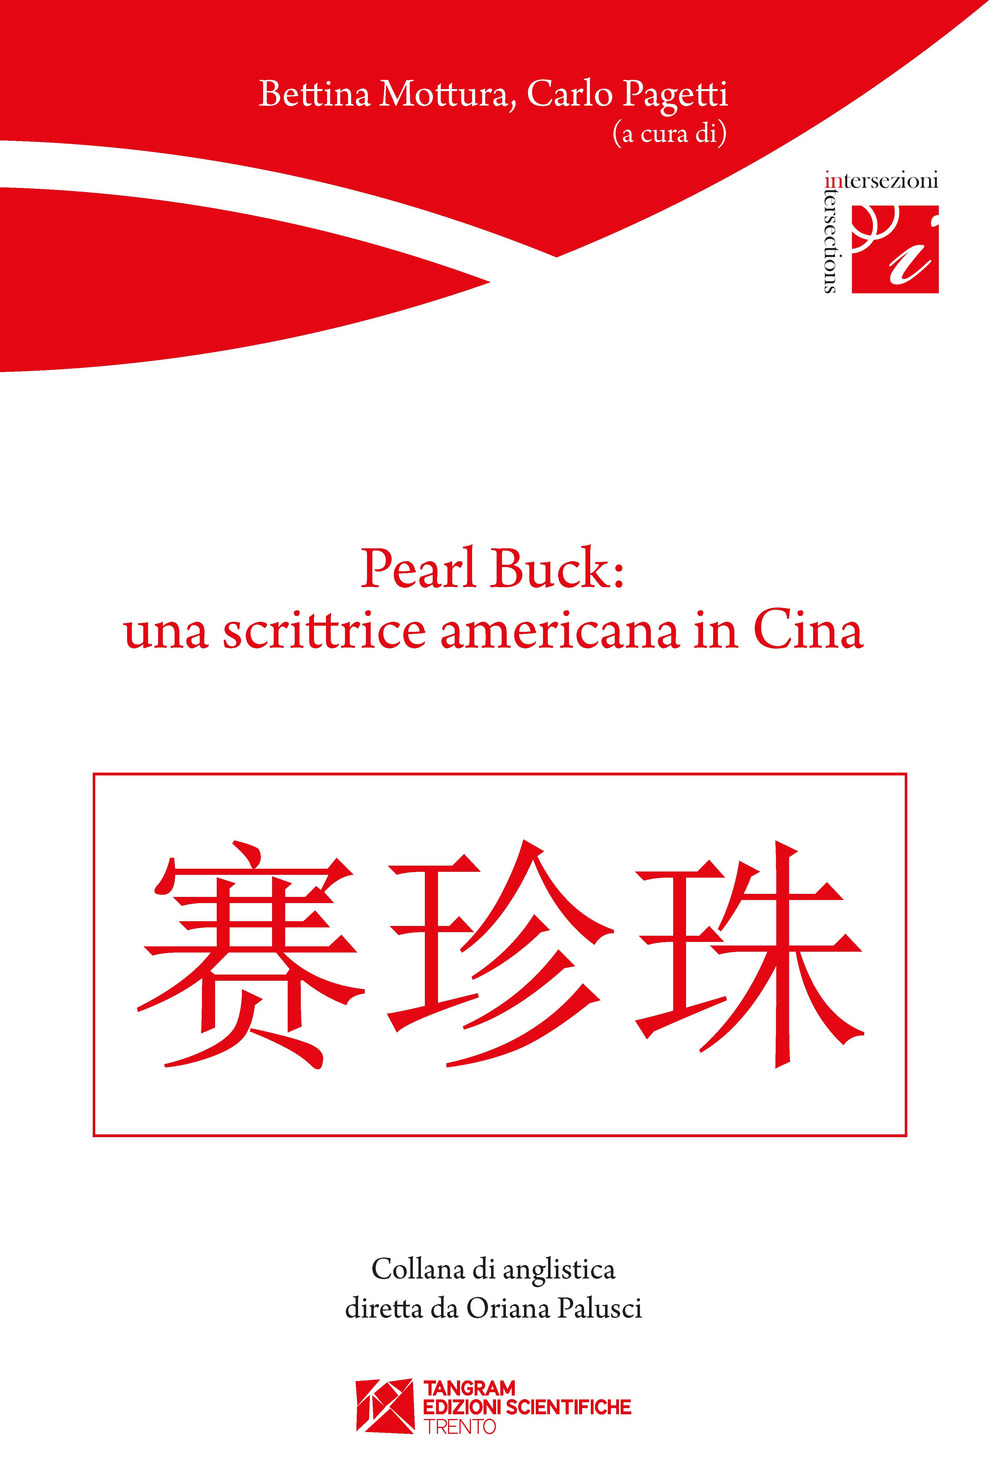 Pearl Buck: una scrittrice americana in Cina